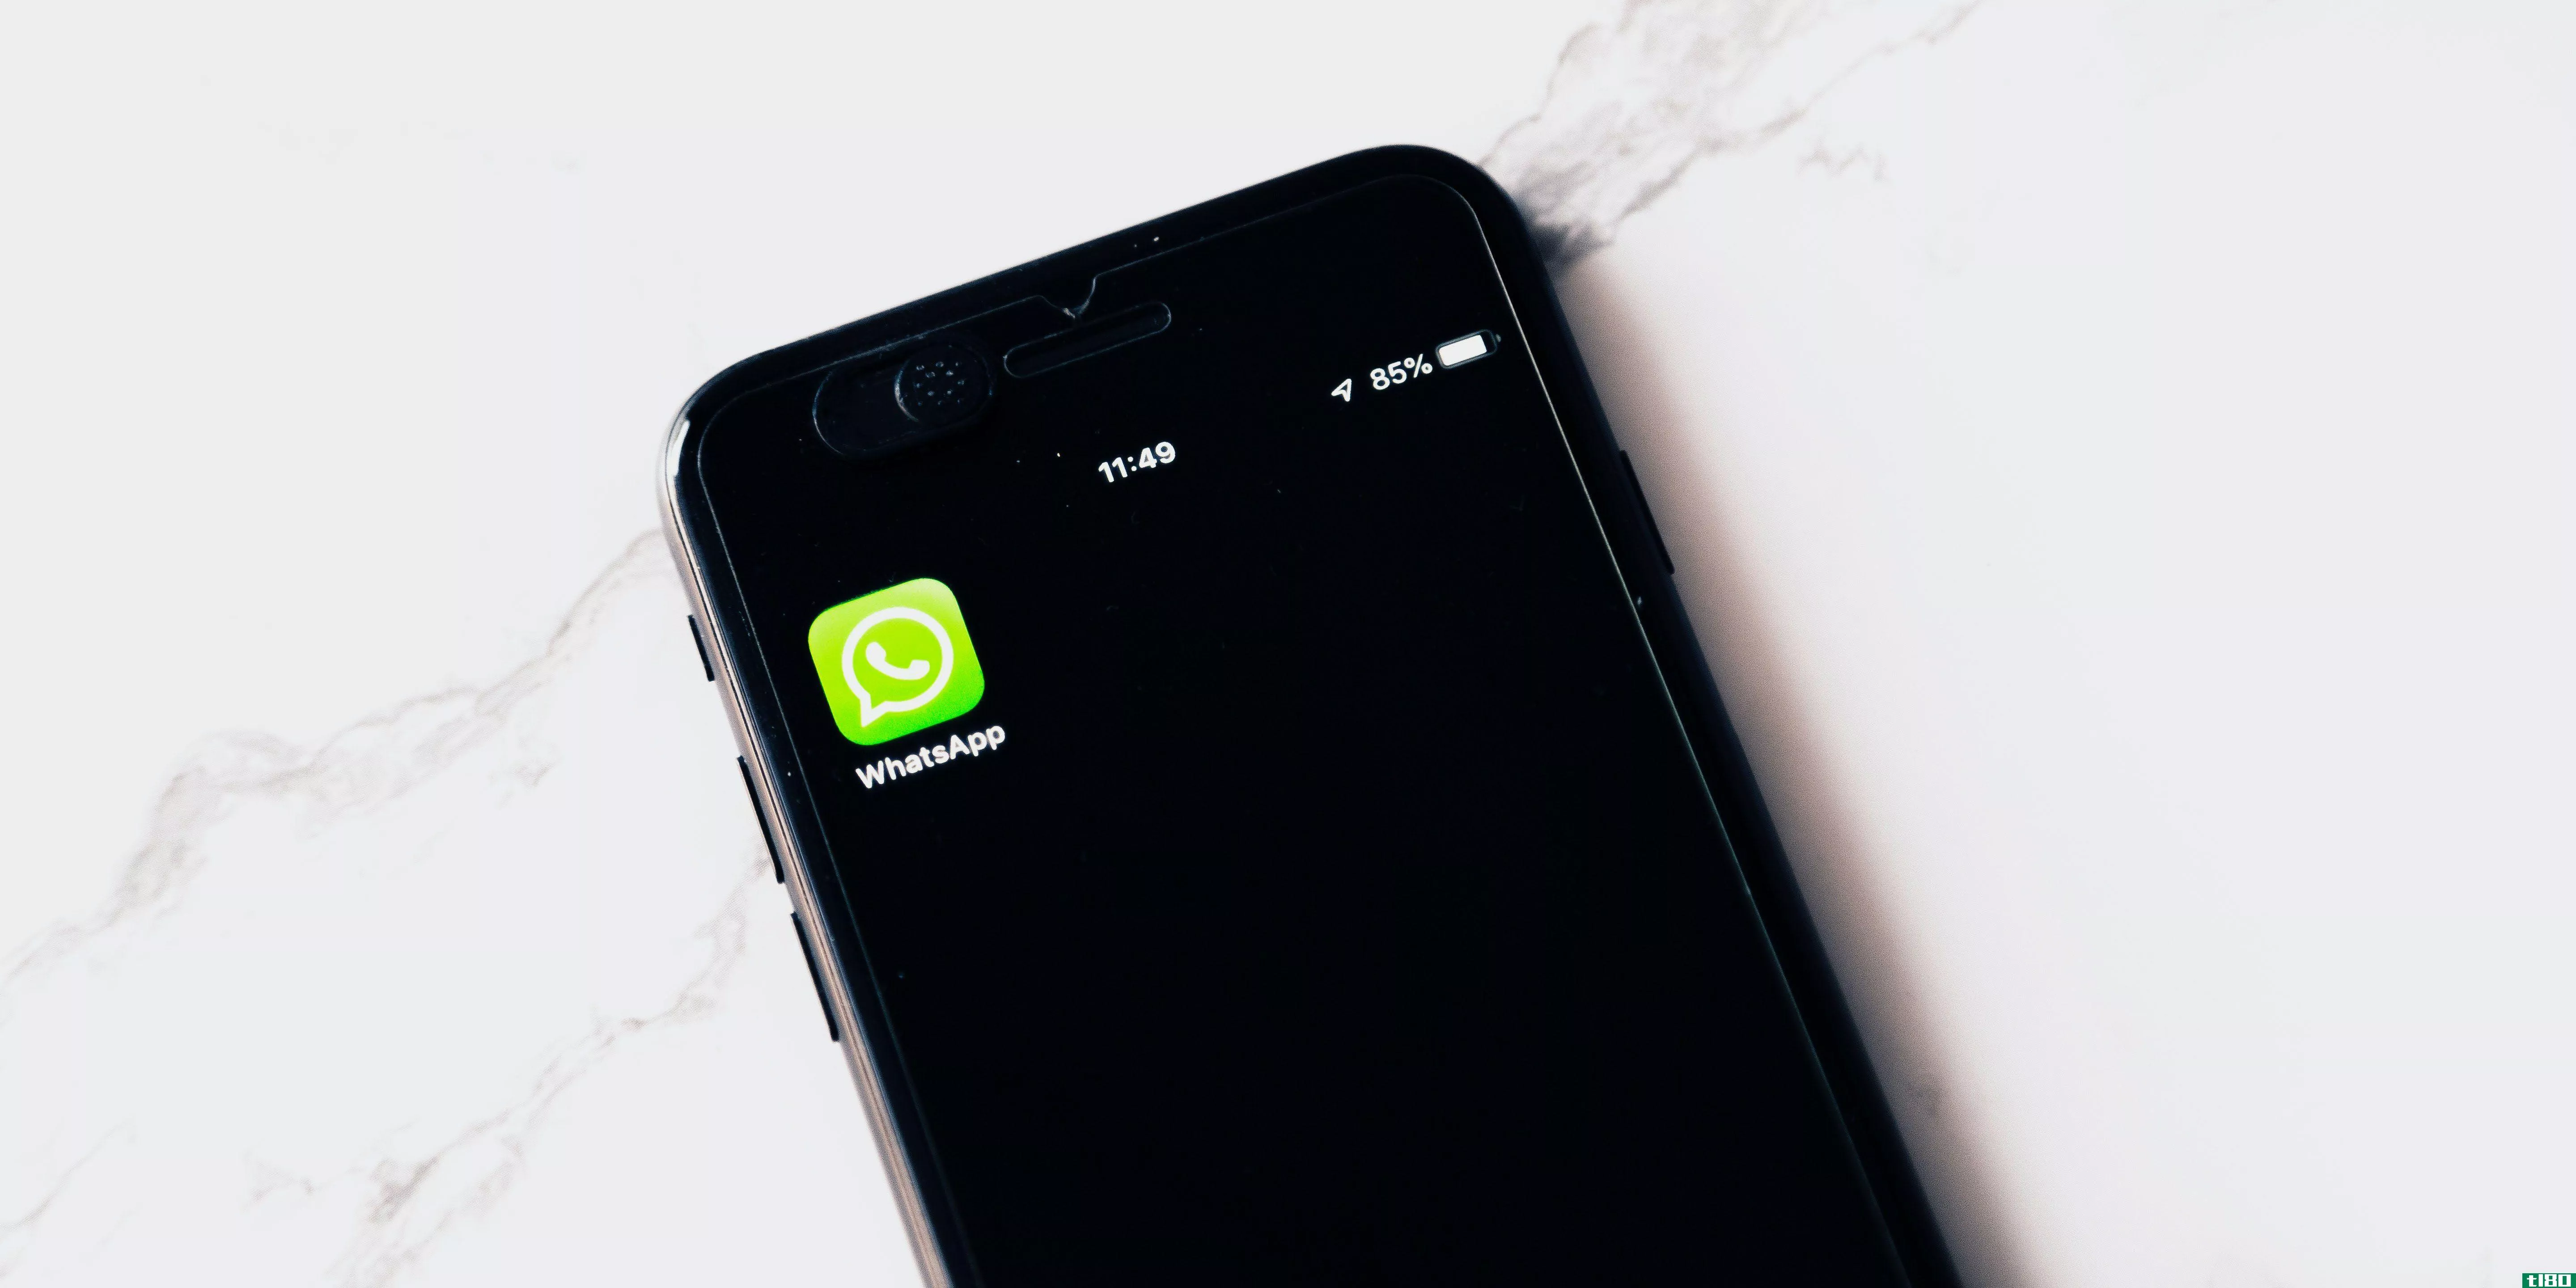 whatsapp的隐私政策会让你寻找新的信息服务吗？